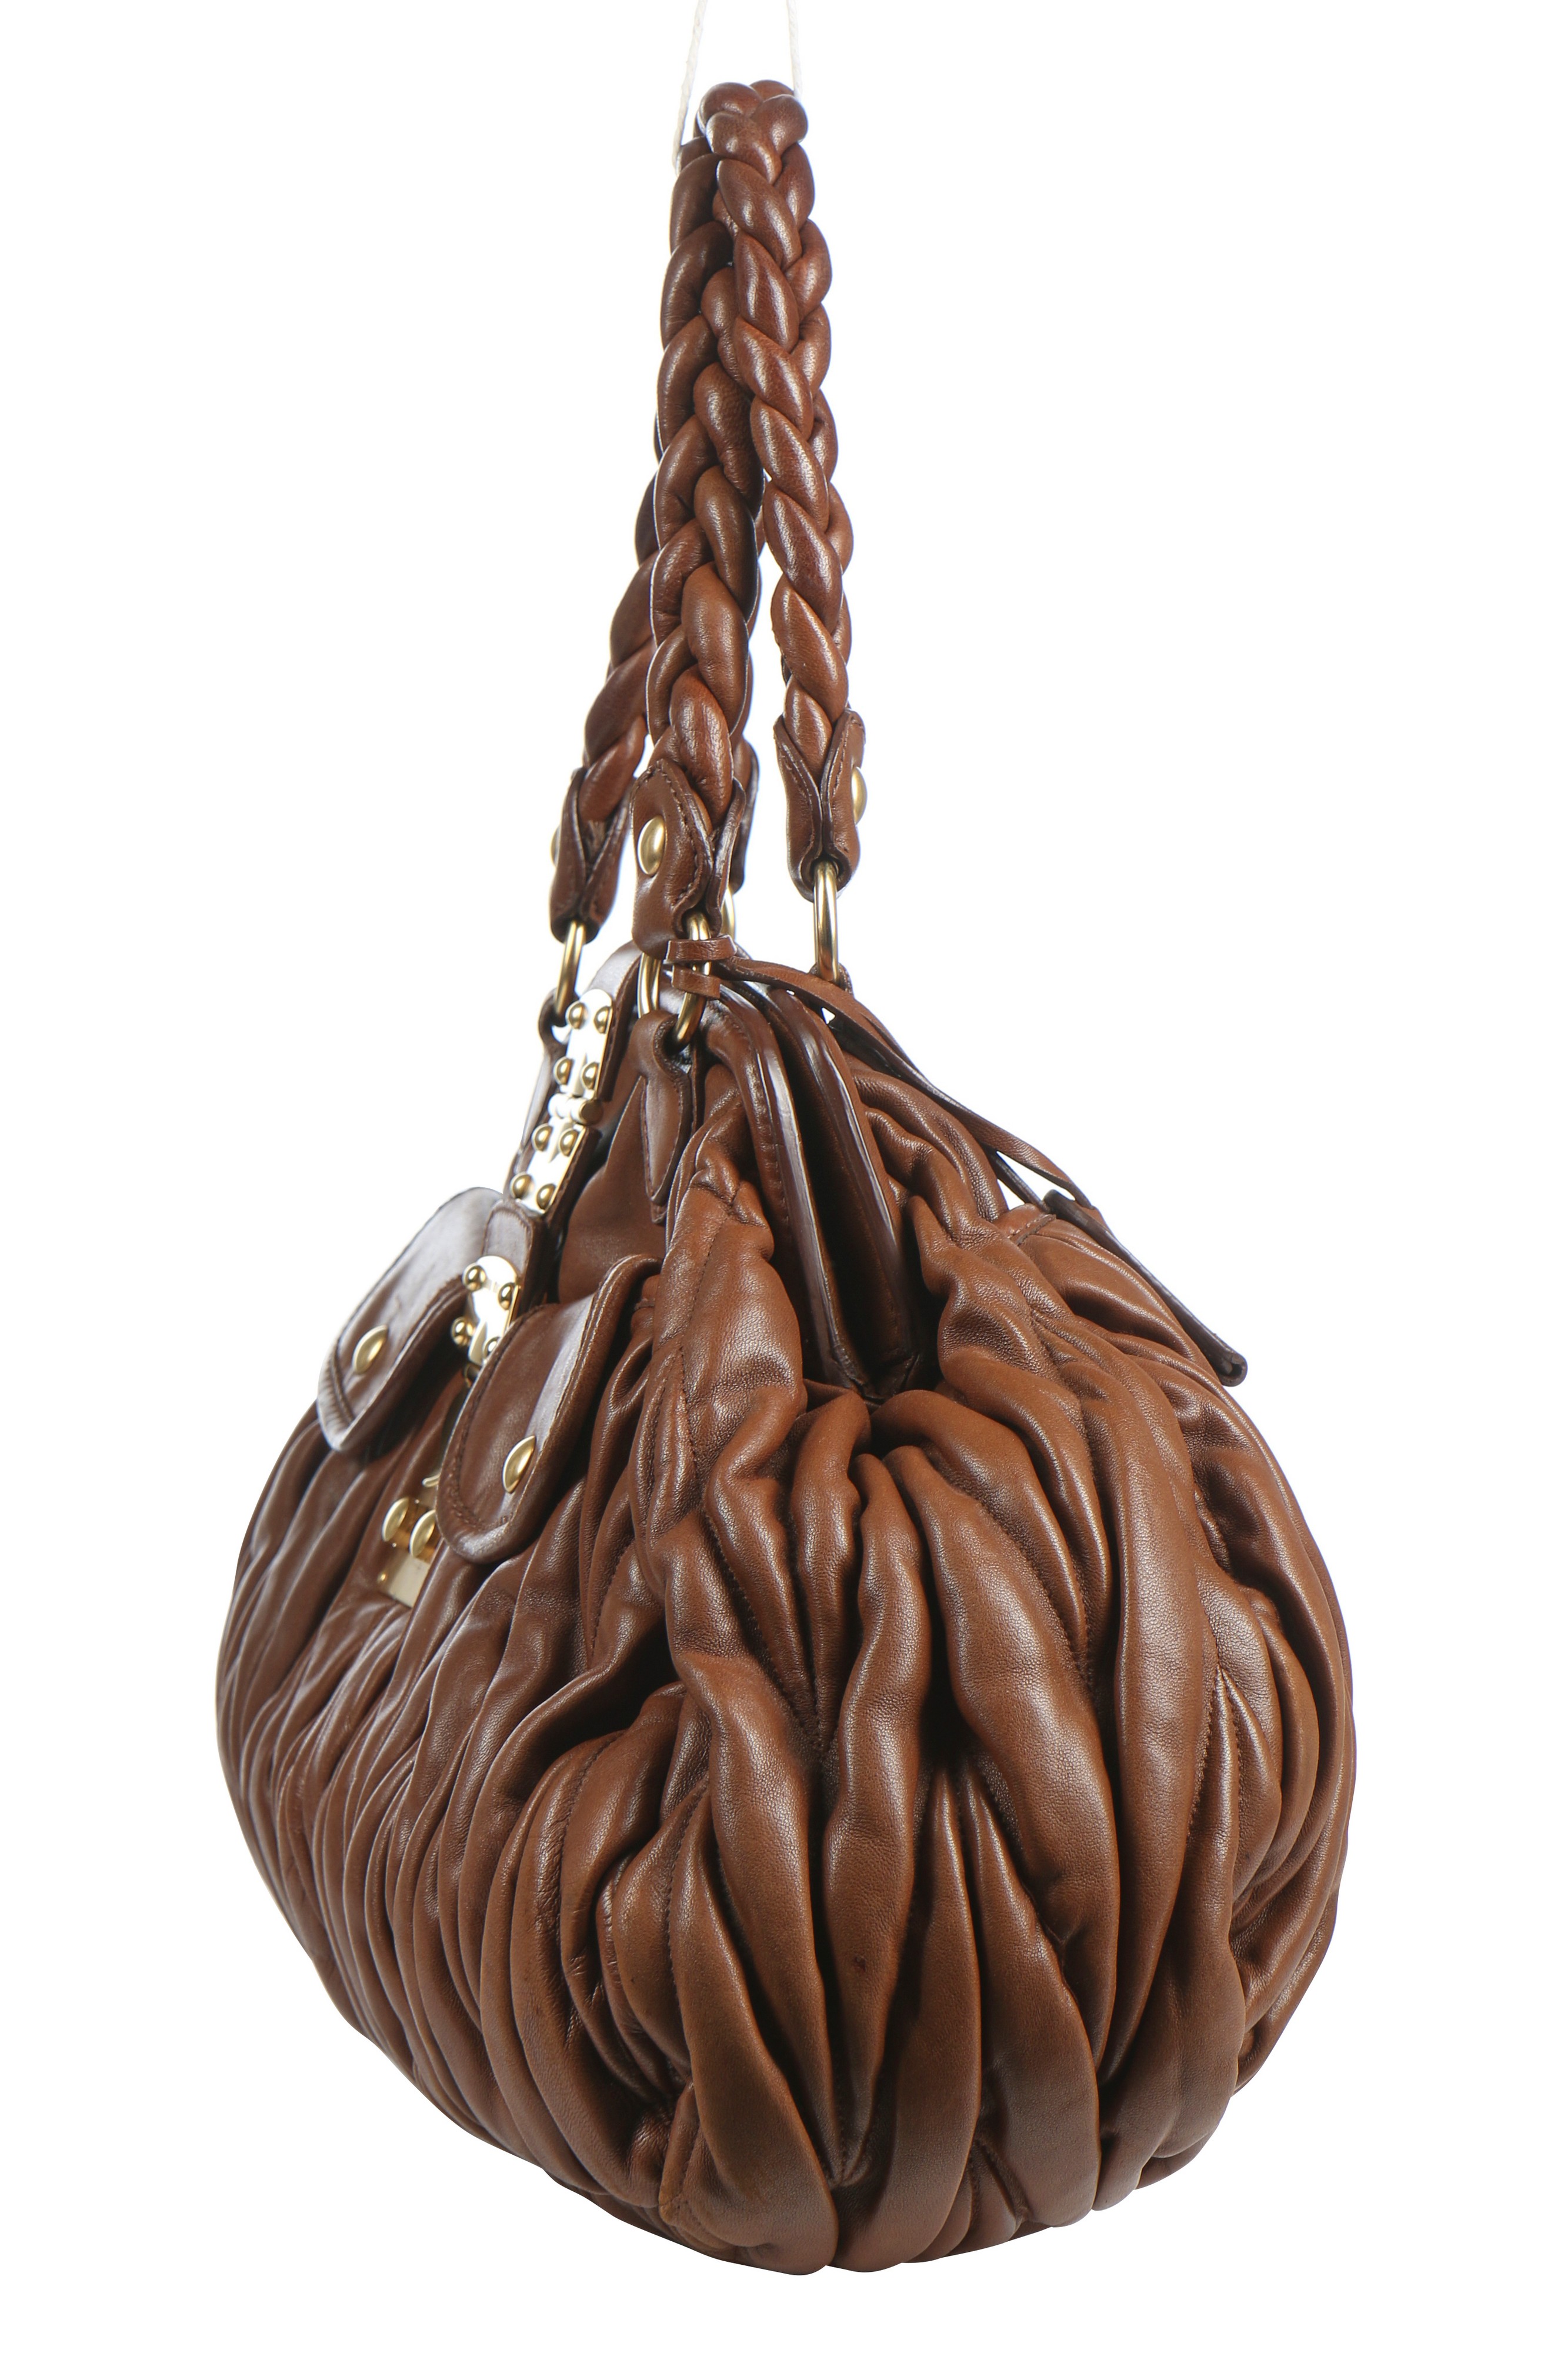 Lot 28 - A Miu Miu ruched brown leather handbag, 2000s-